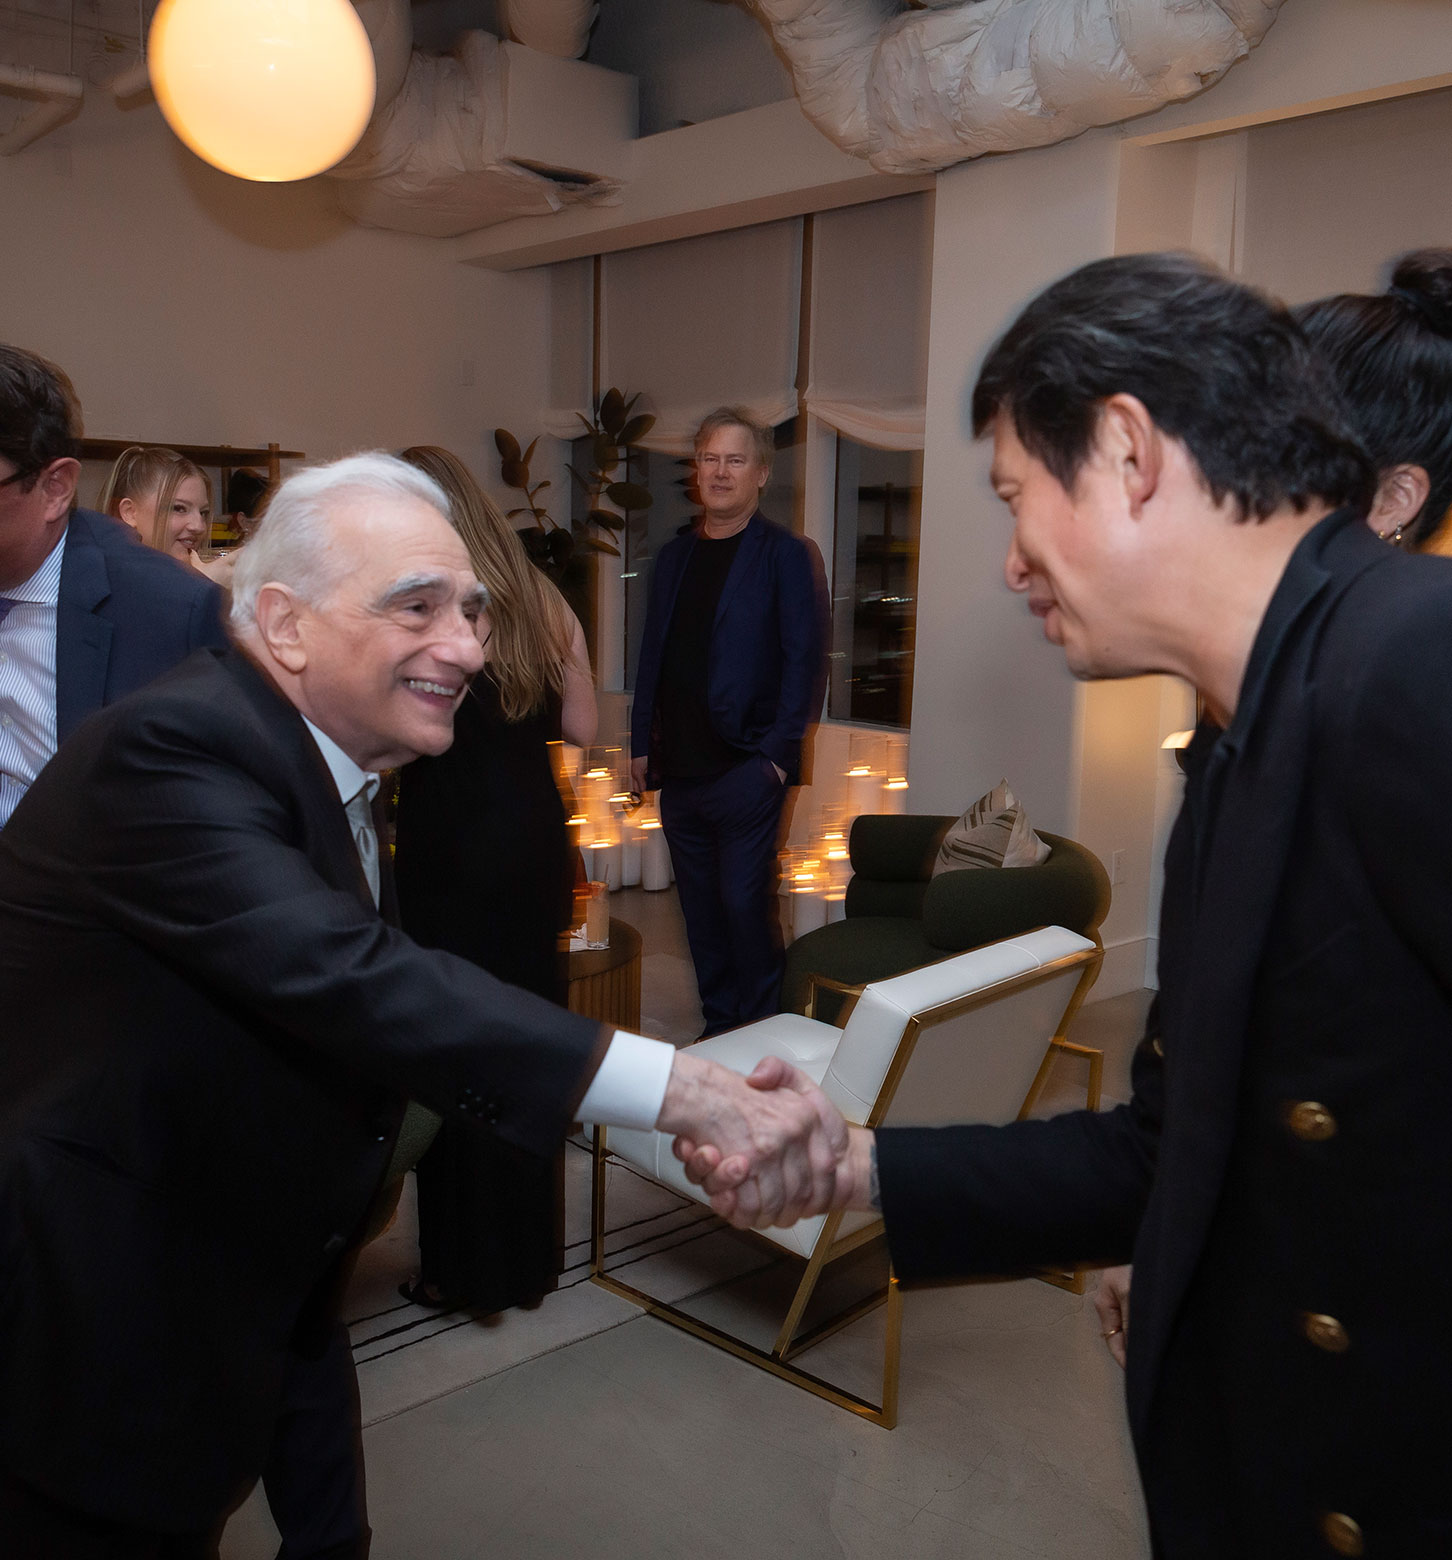 Wei meeting award-winning filmmaker Martin Scorsese